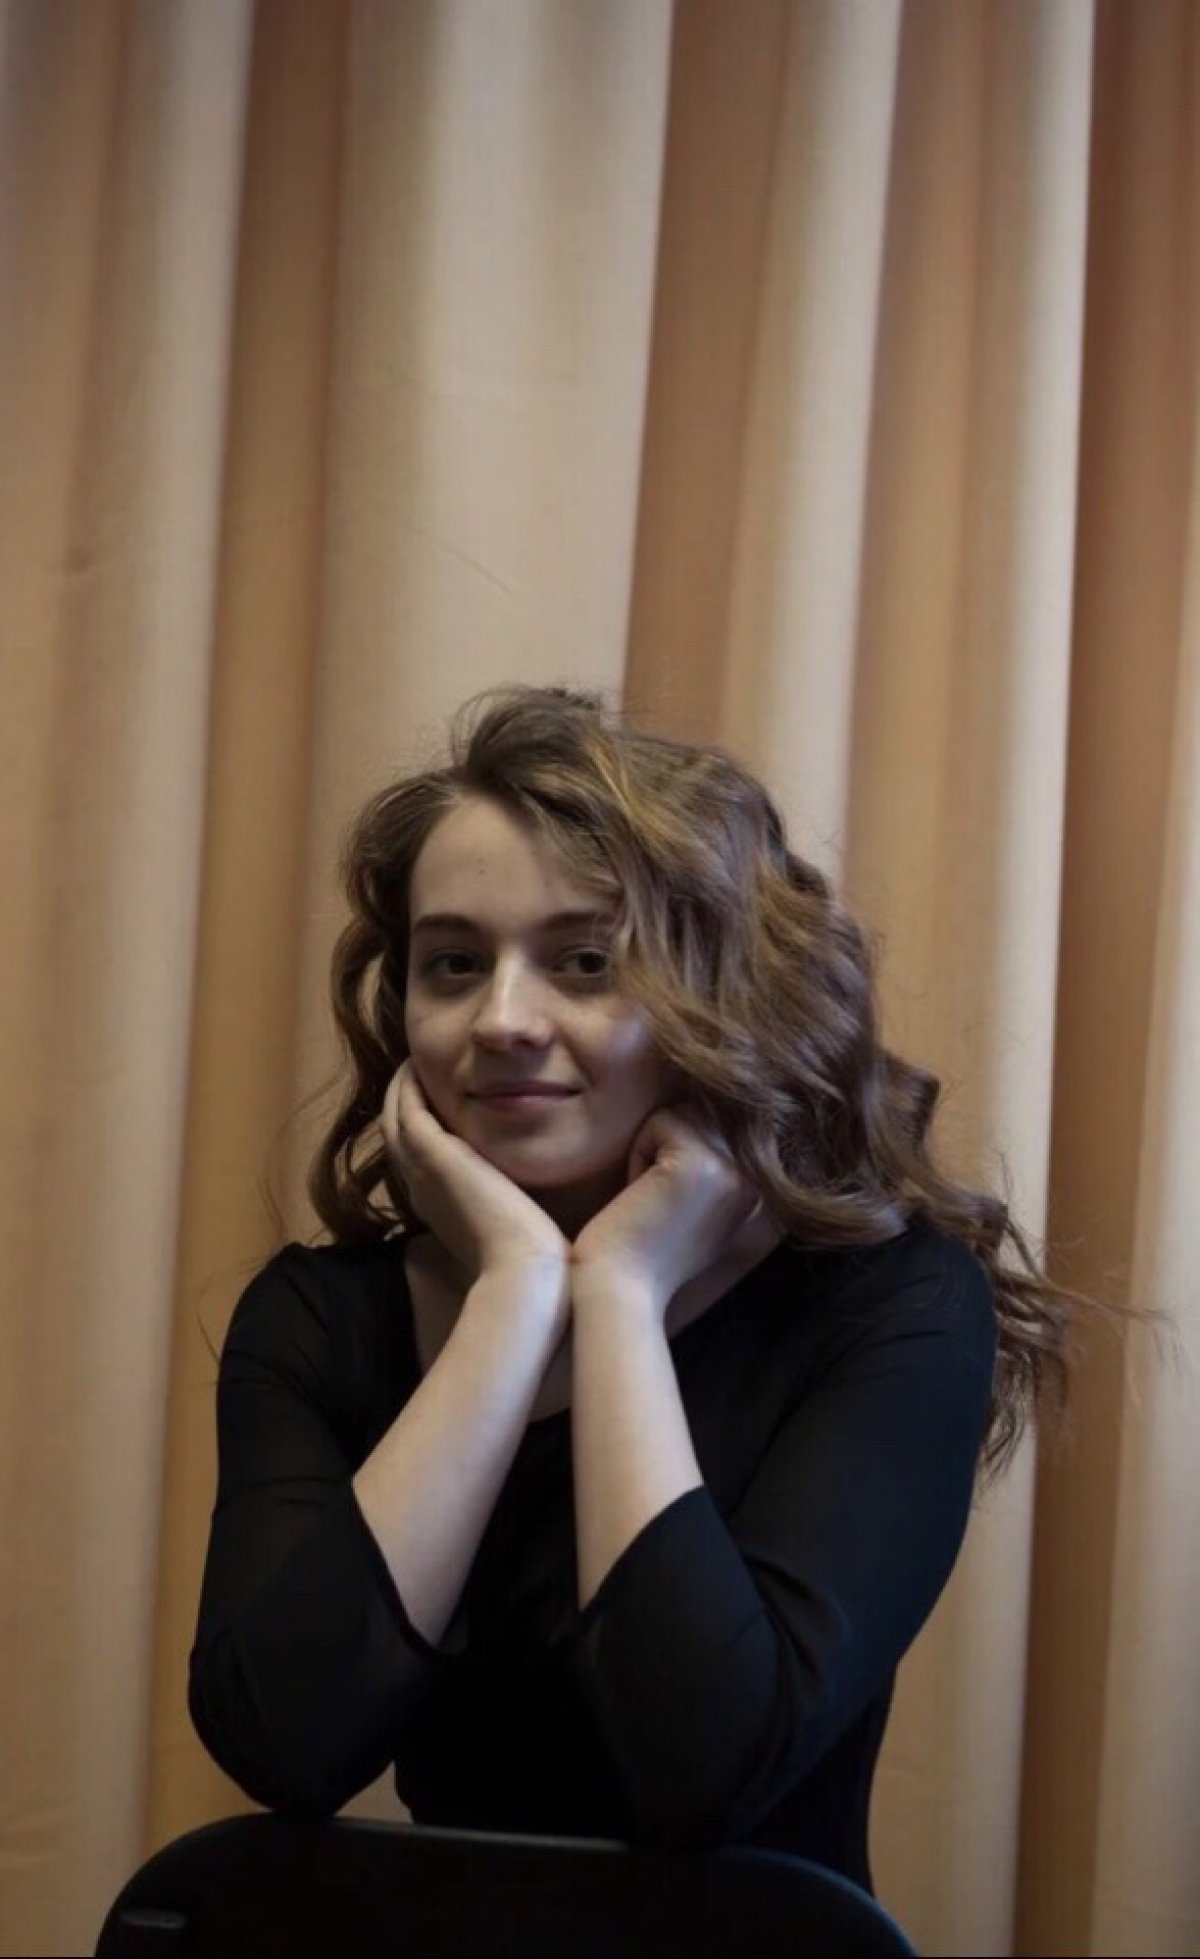 А вы знали что в Новосибирском командном речном училище имени С.И. Дежнёва 14 февраля состоится конкурс красоты «Мисс Зима 2019»?